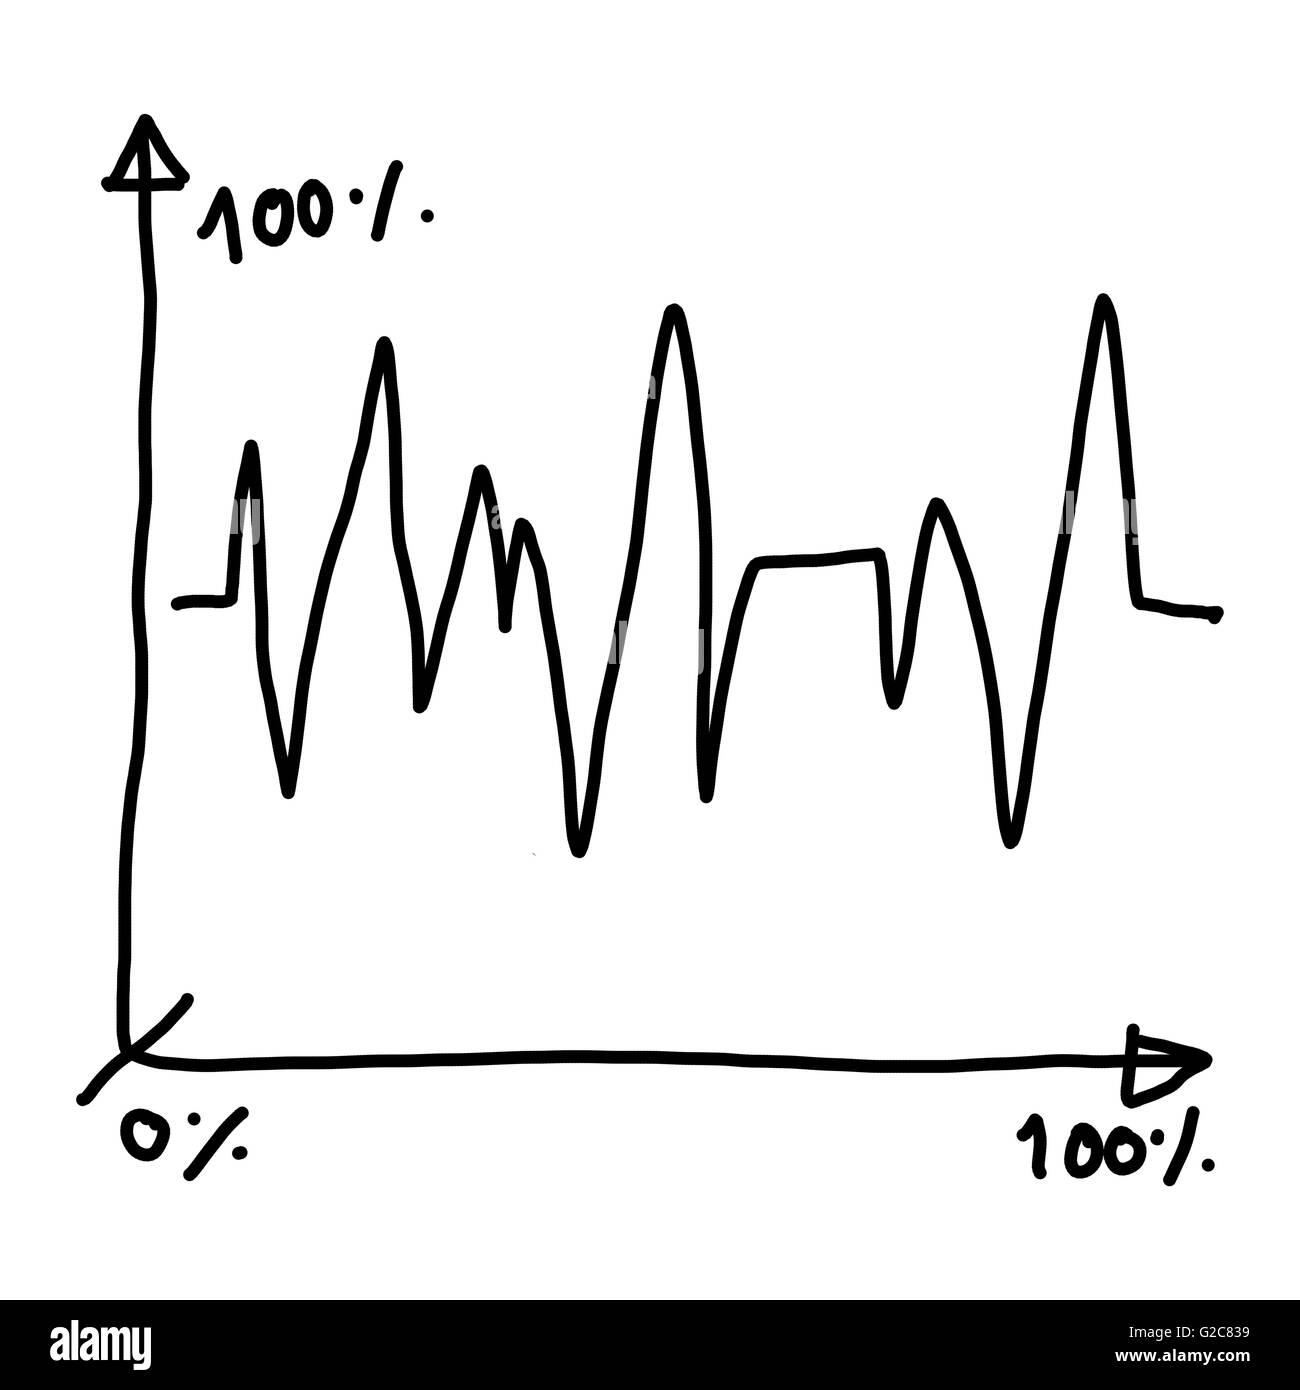 Disegnato a mano nel simbolo grafico di business per il concetto di applicazioni ideale economia analisi degli investimenti. Foto Stock